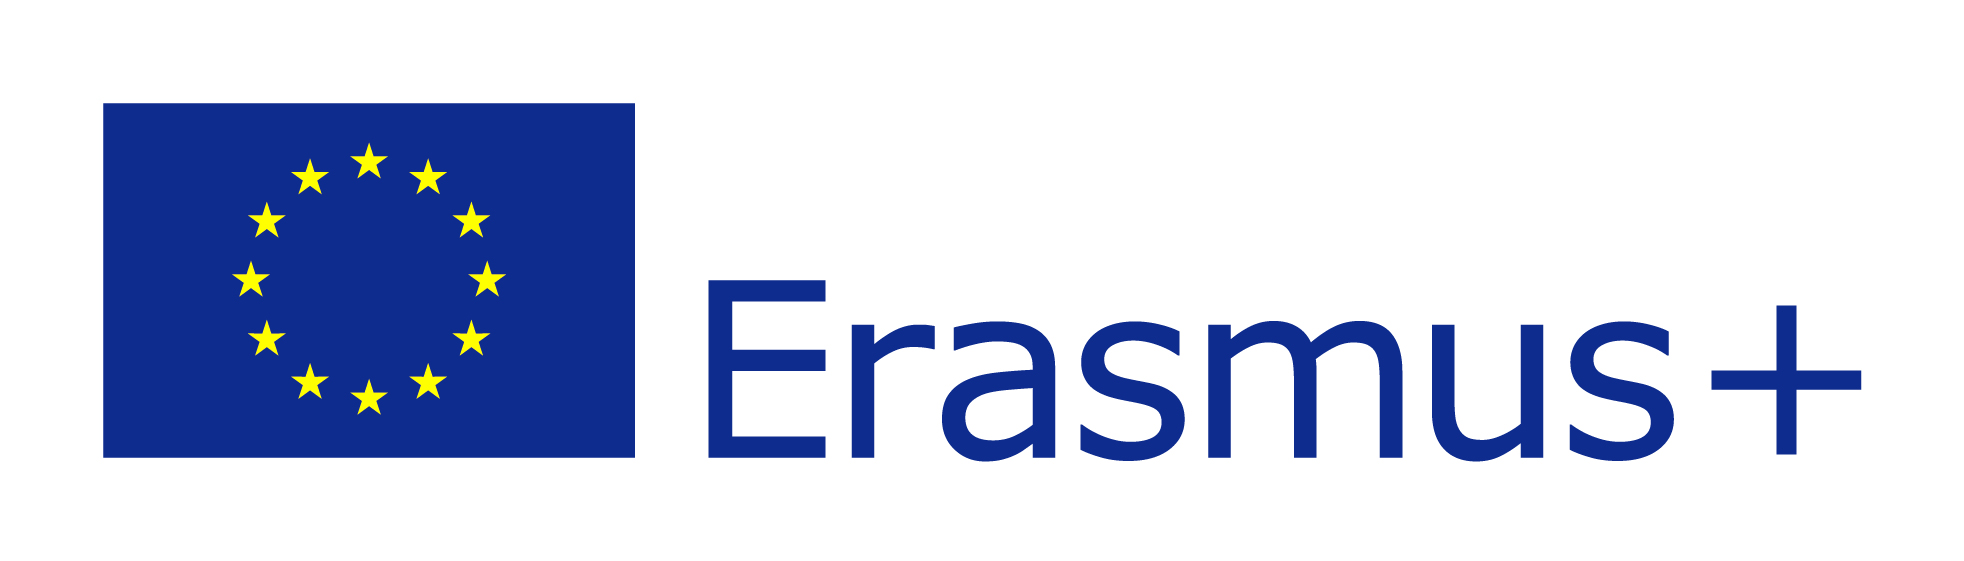 ERASMUS plus logo EU flag